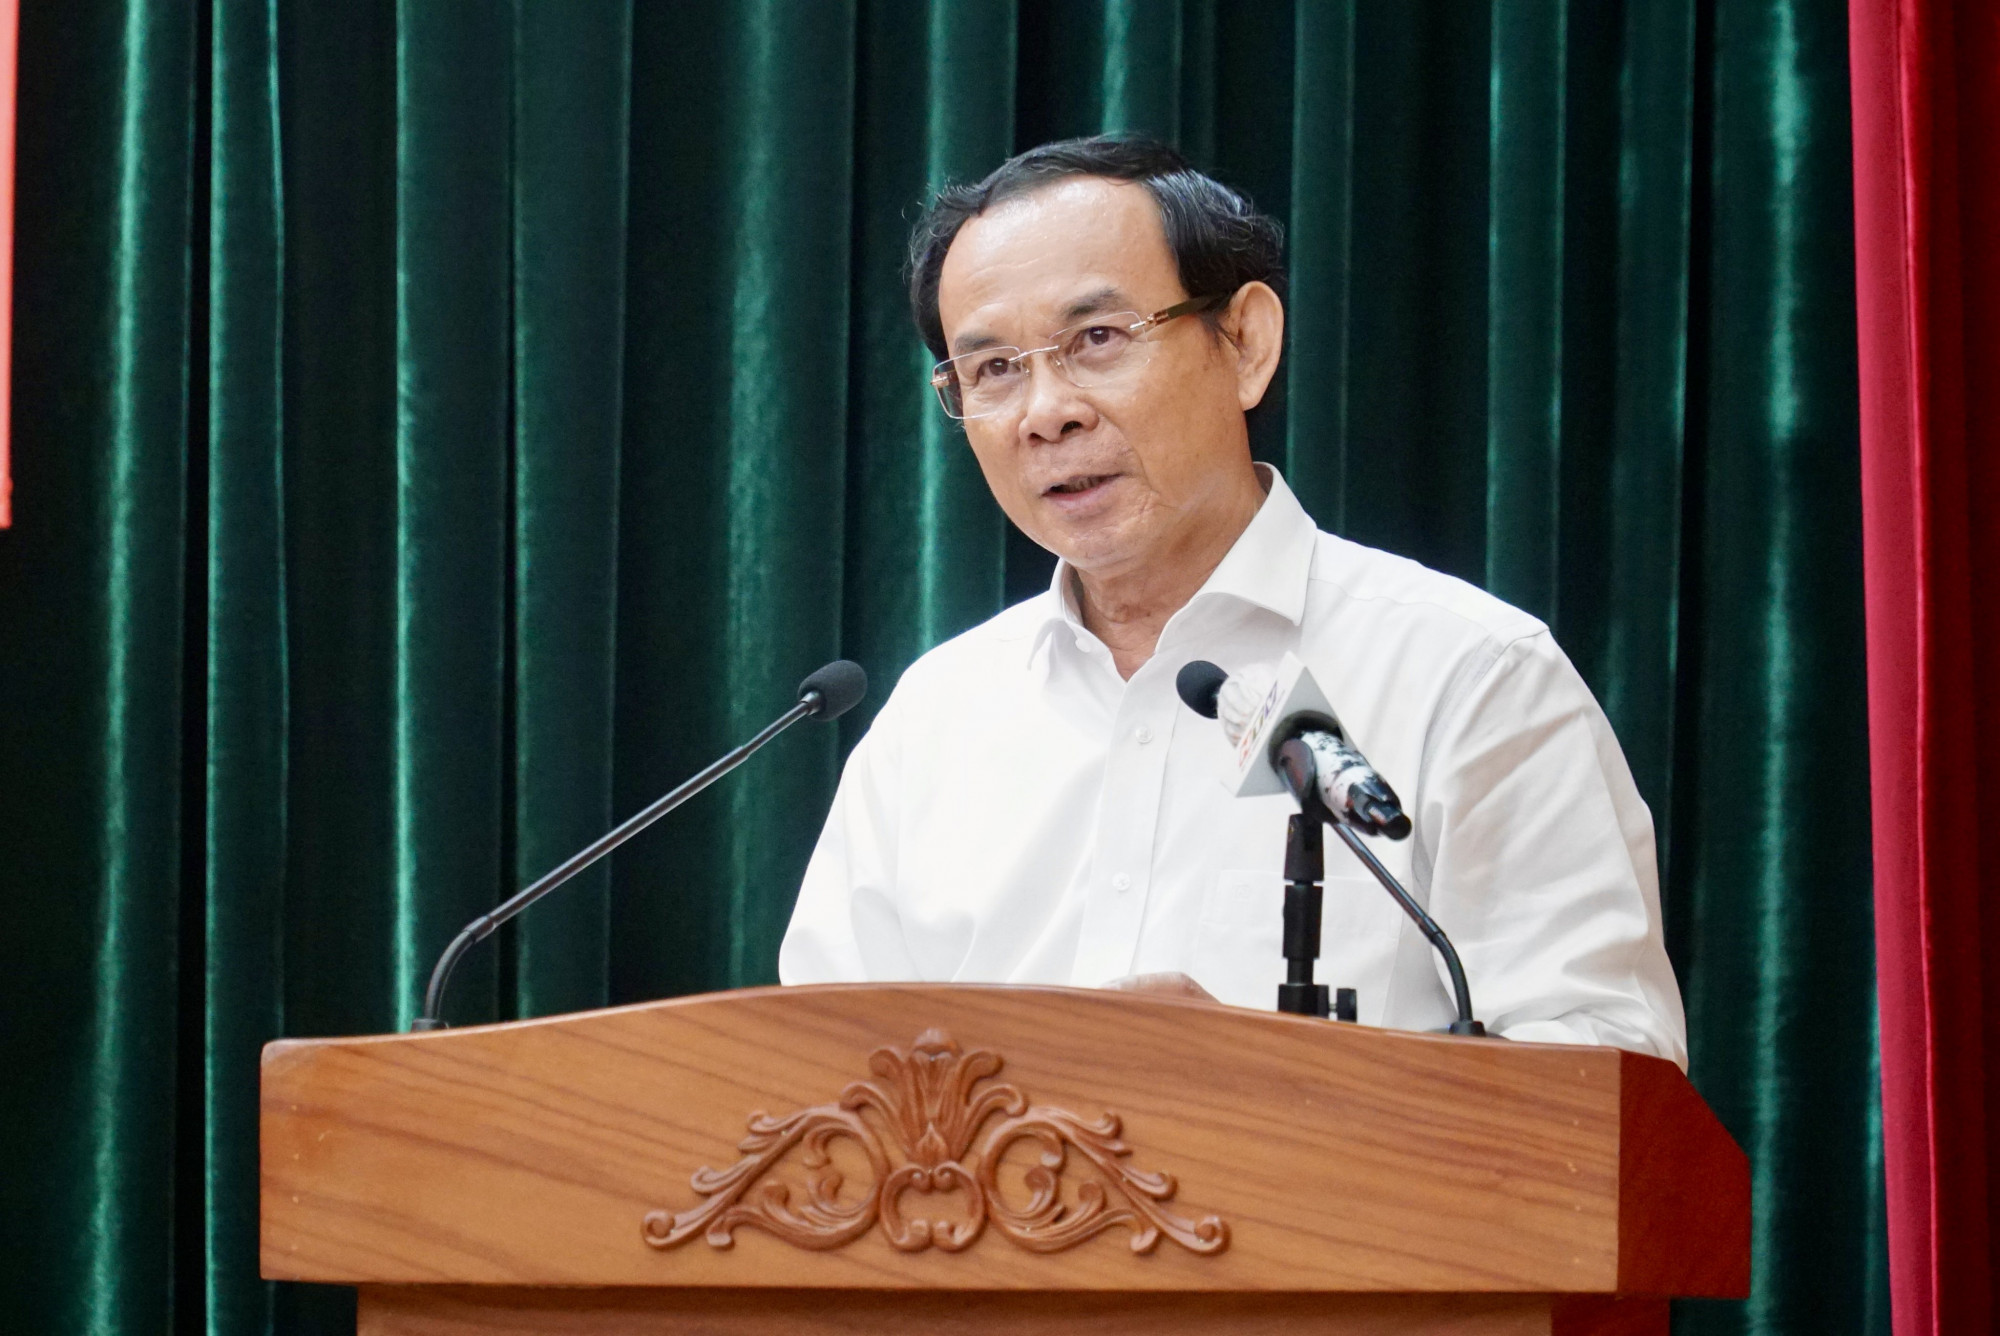 Bí thư Thành ủy TPHCM Nguyễn Văn Nên cho rằng việc cung cấp thông tin từ Bộ Ngoại giao rất quan trọng đối với các chủ trương, quyết sách của thành phố